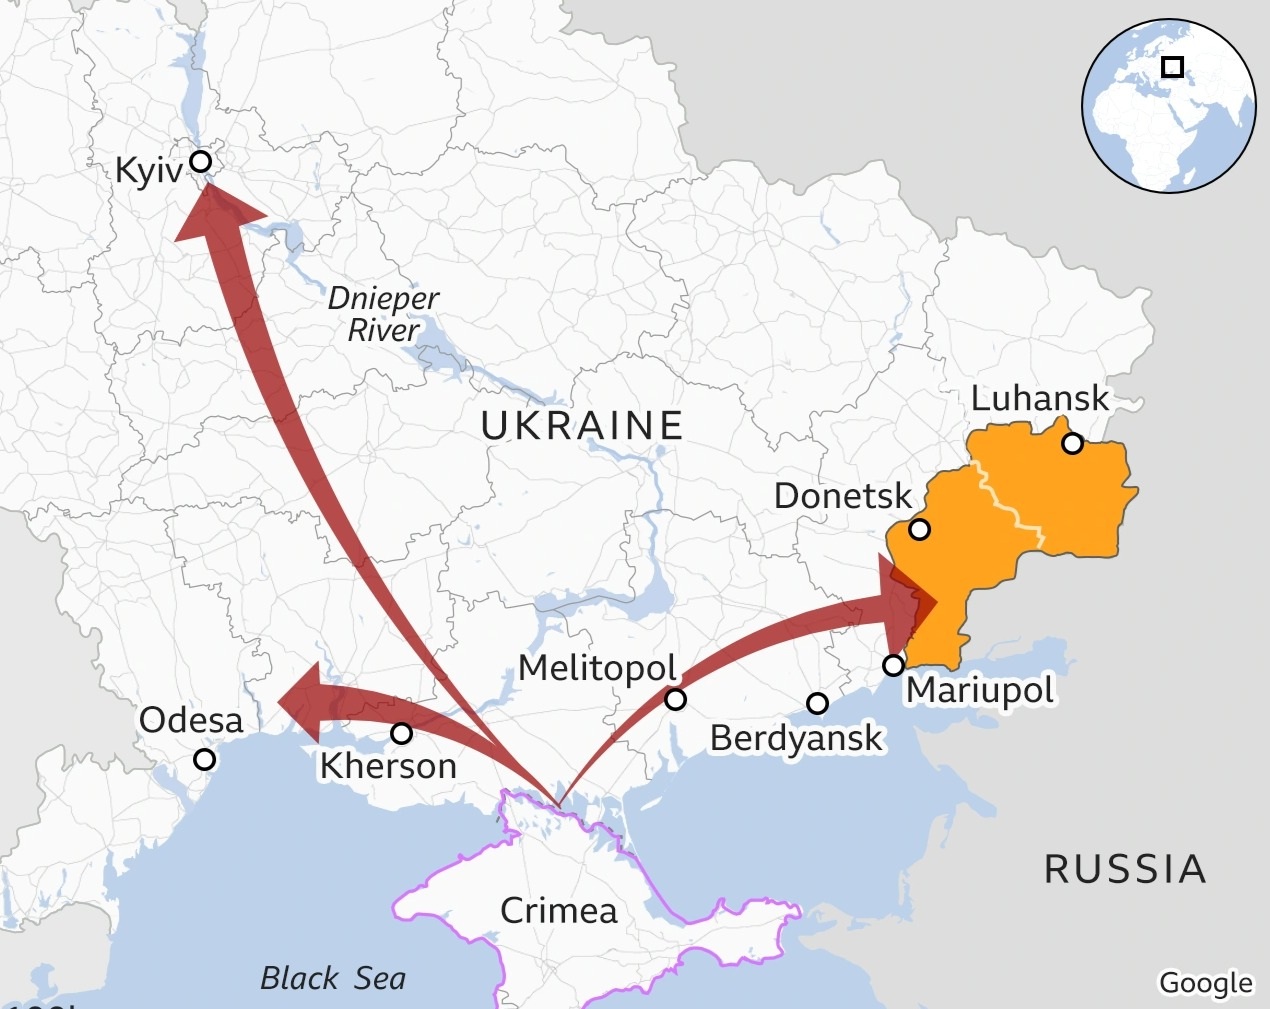 Ukraine bị nghi phóng tên lửa tấn công giàn khoan dầu của Nga gần Crimea - 2